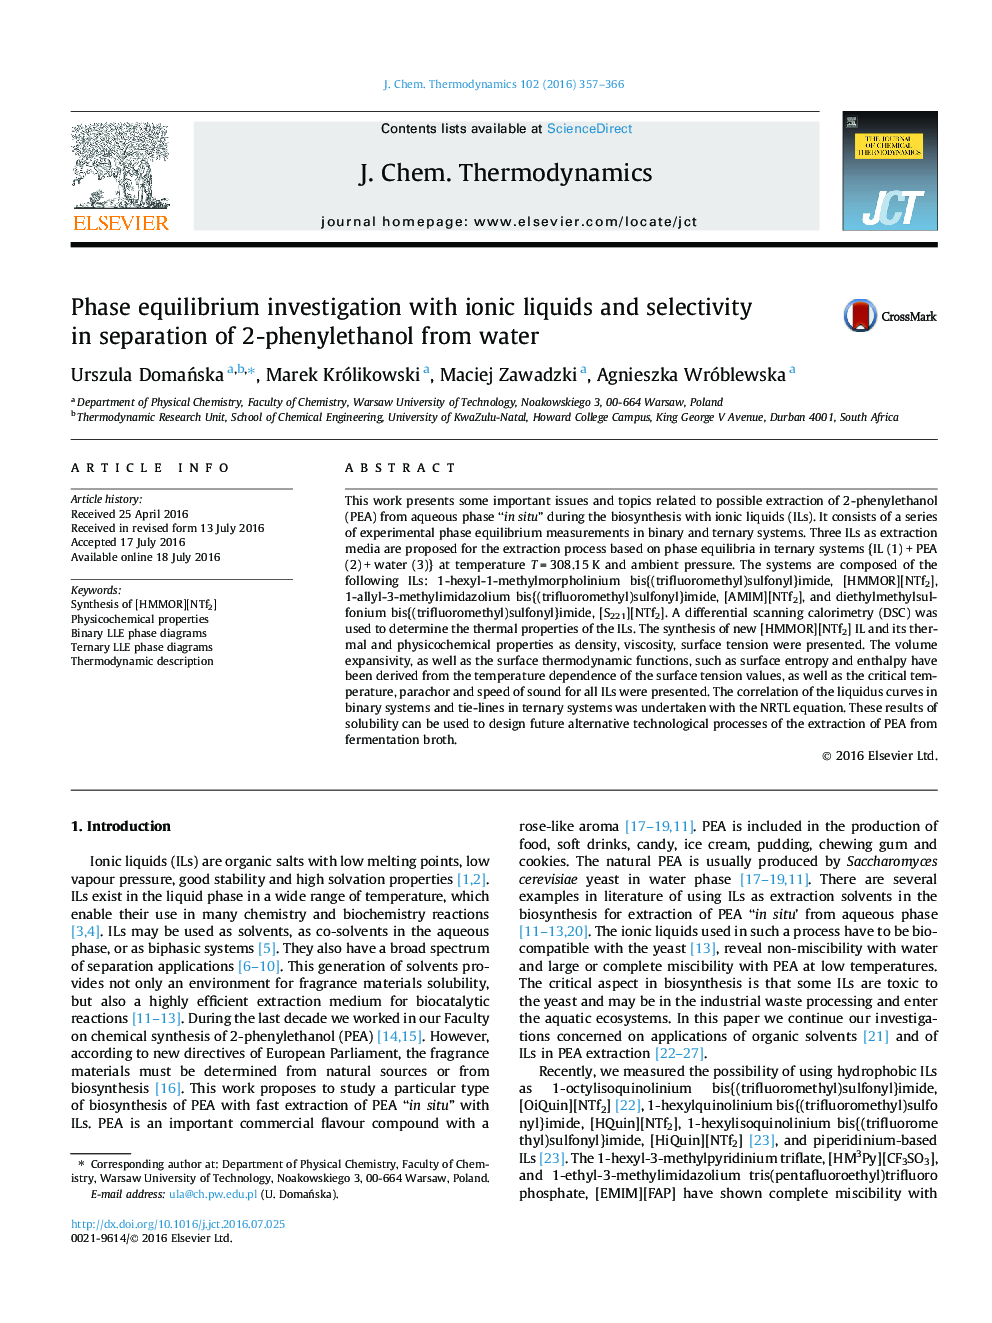 بررسی تعادل فاز با مایعات یونی و انتخابی در جداسازی 2-فنیل اتانول از آب